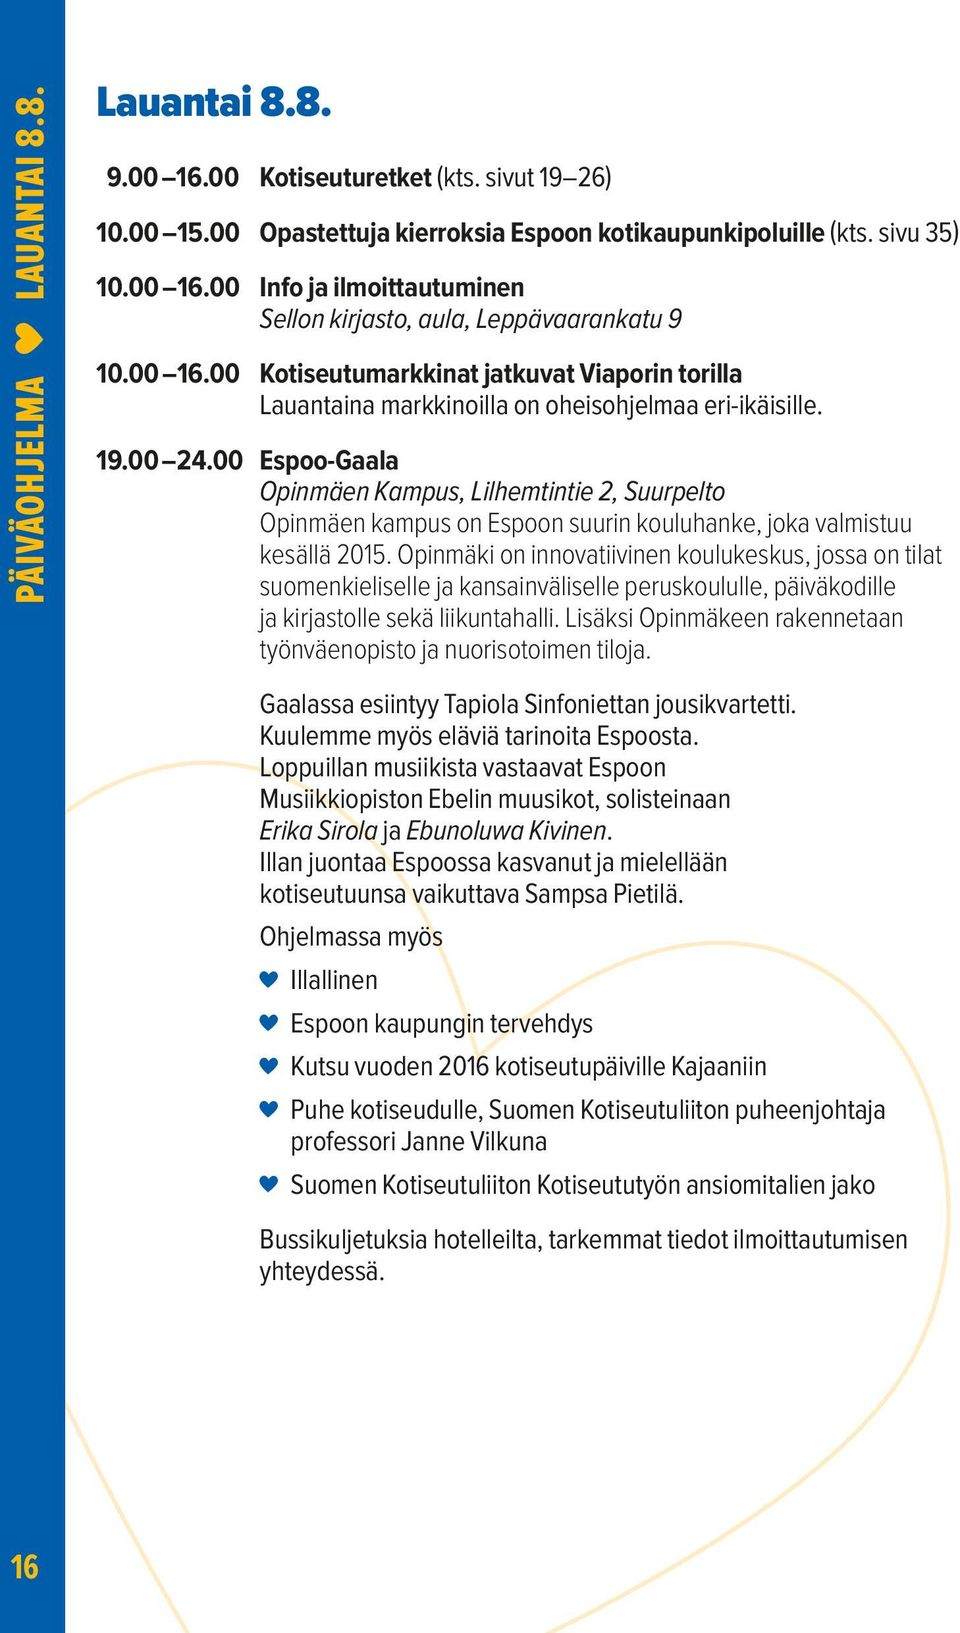 00 Espoo-Gaala Opinmäen Kampus, Lilhemtintie 2, Suurpelto Opinmäen kampus on Espoon suurin kouluhanke, joka valmistuu kesällä 2015.